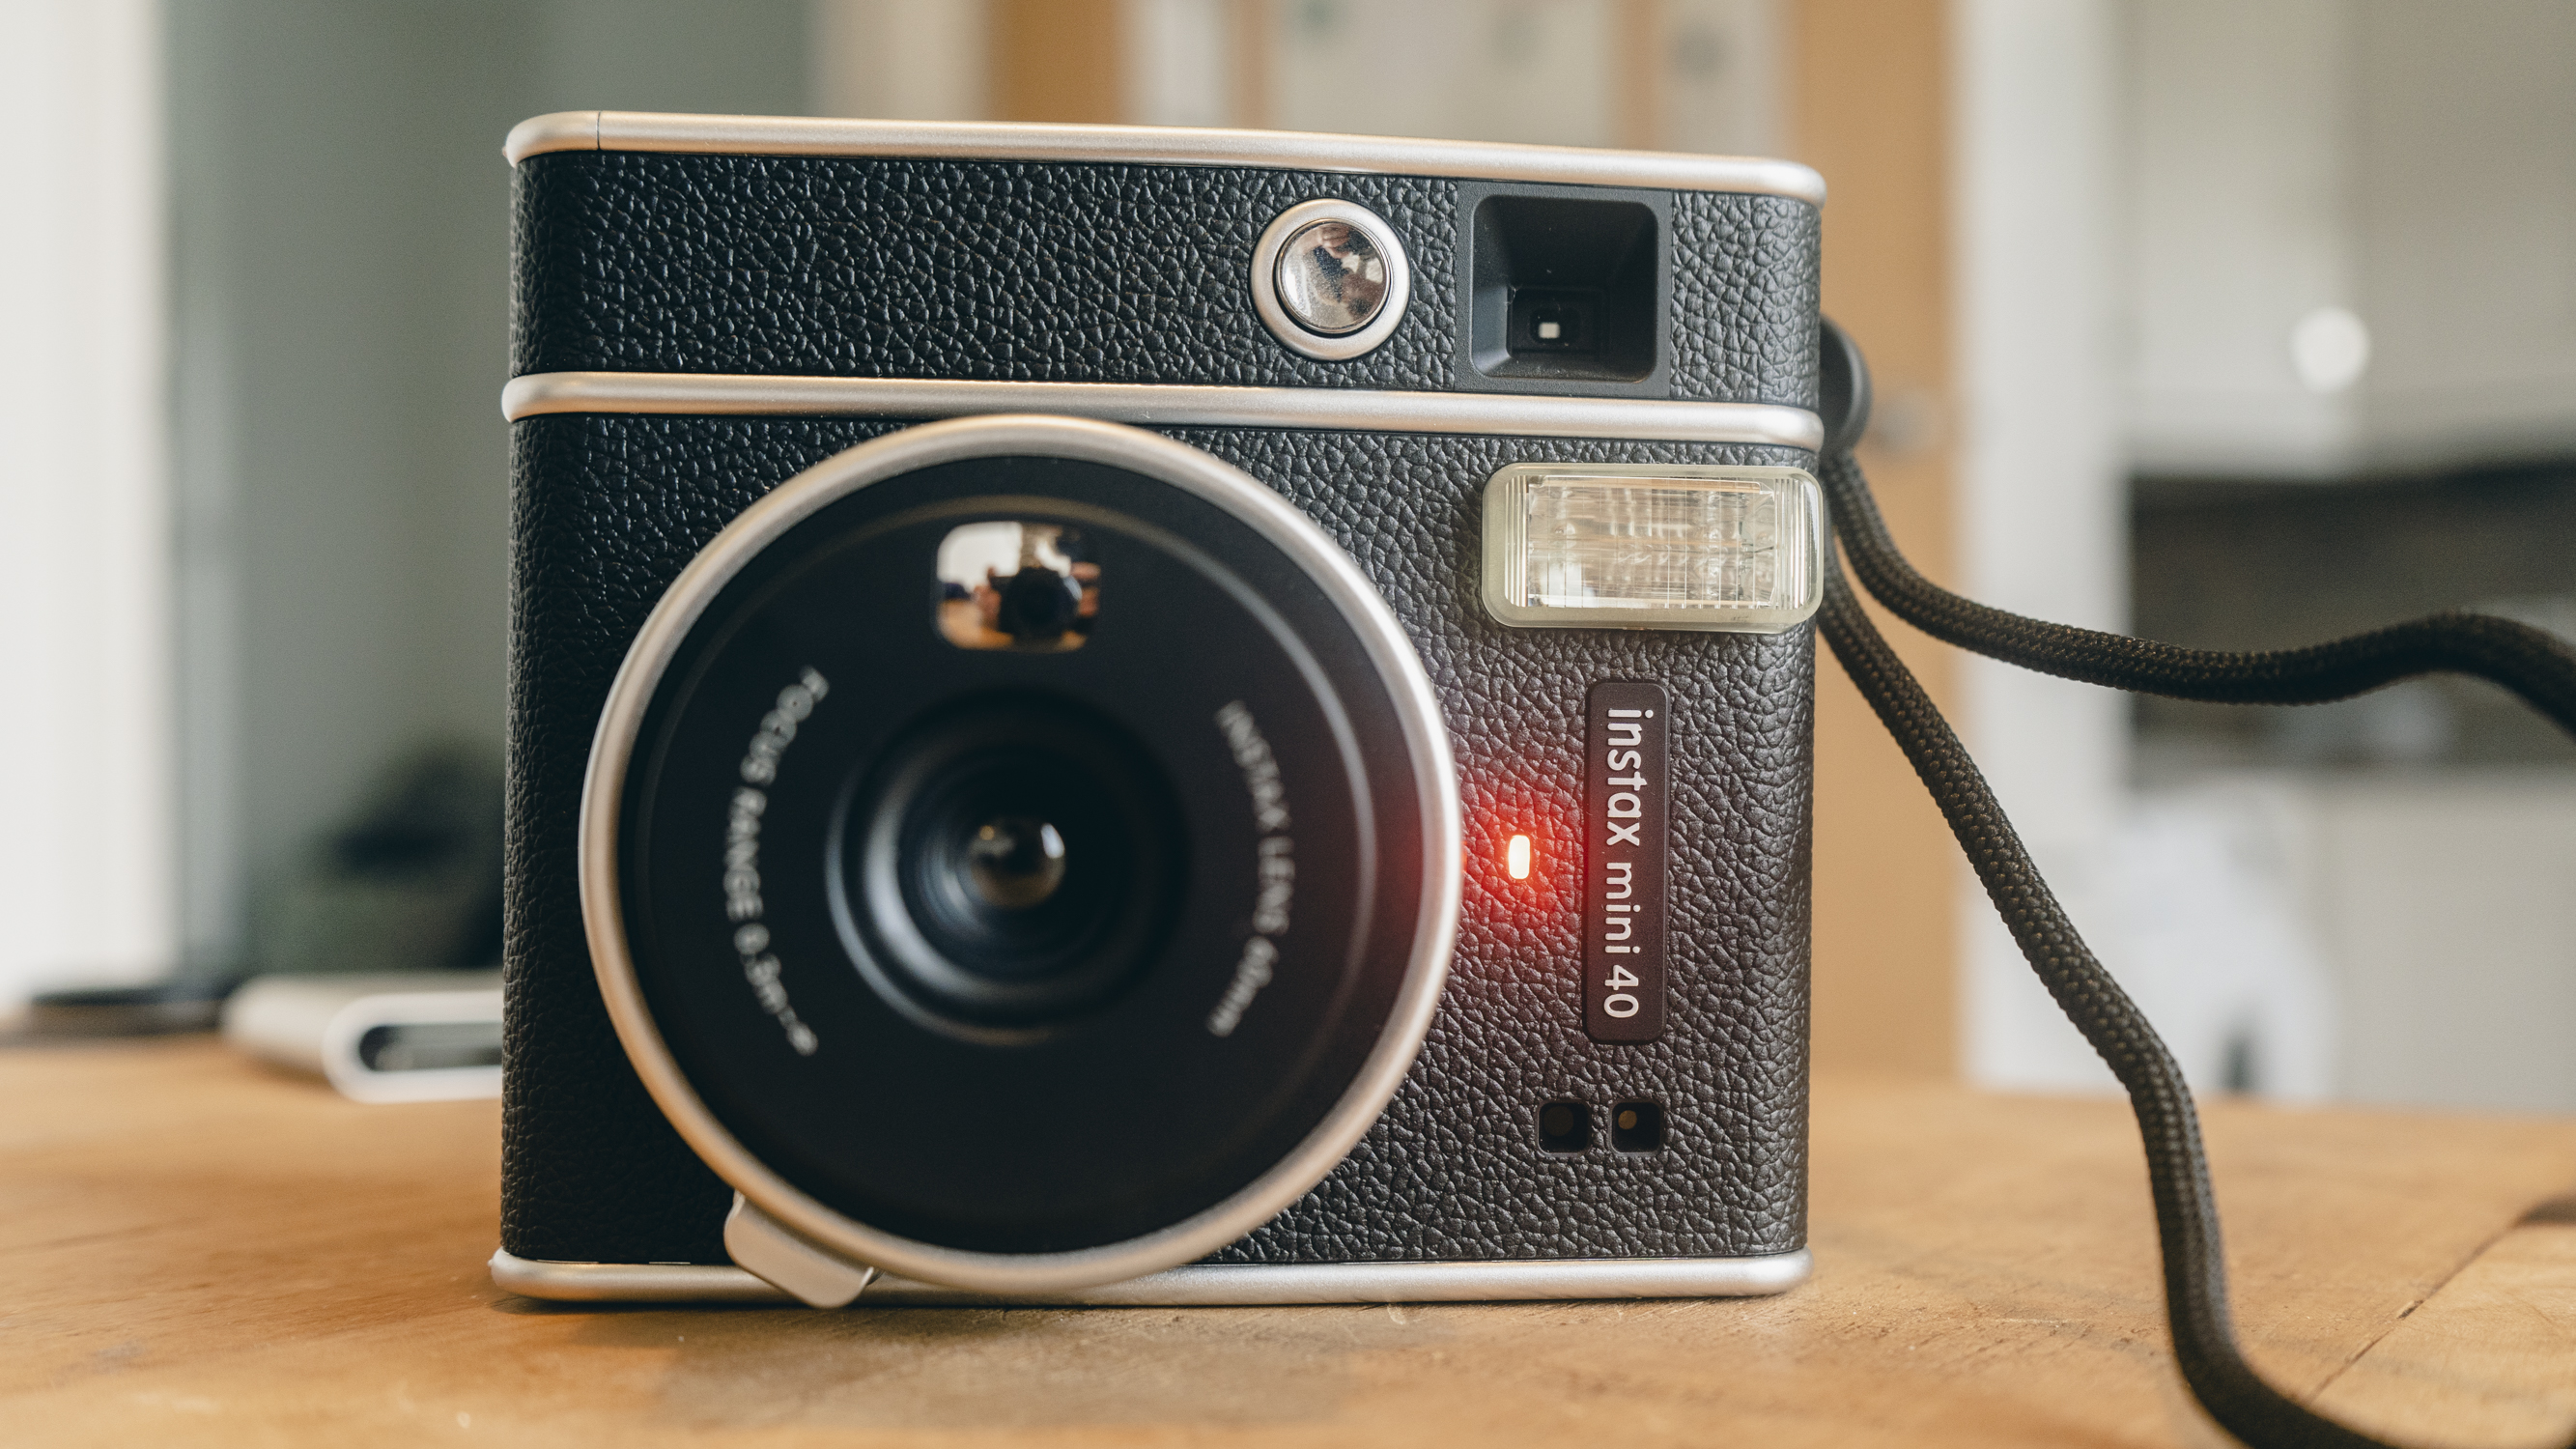 I love the Fujifilm Instax Mini 40 – but it isn't a proper